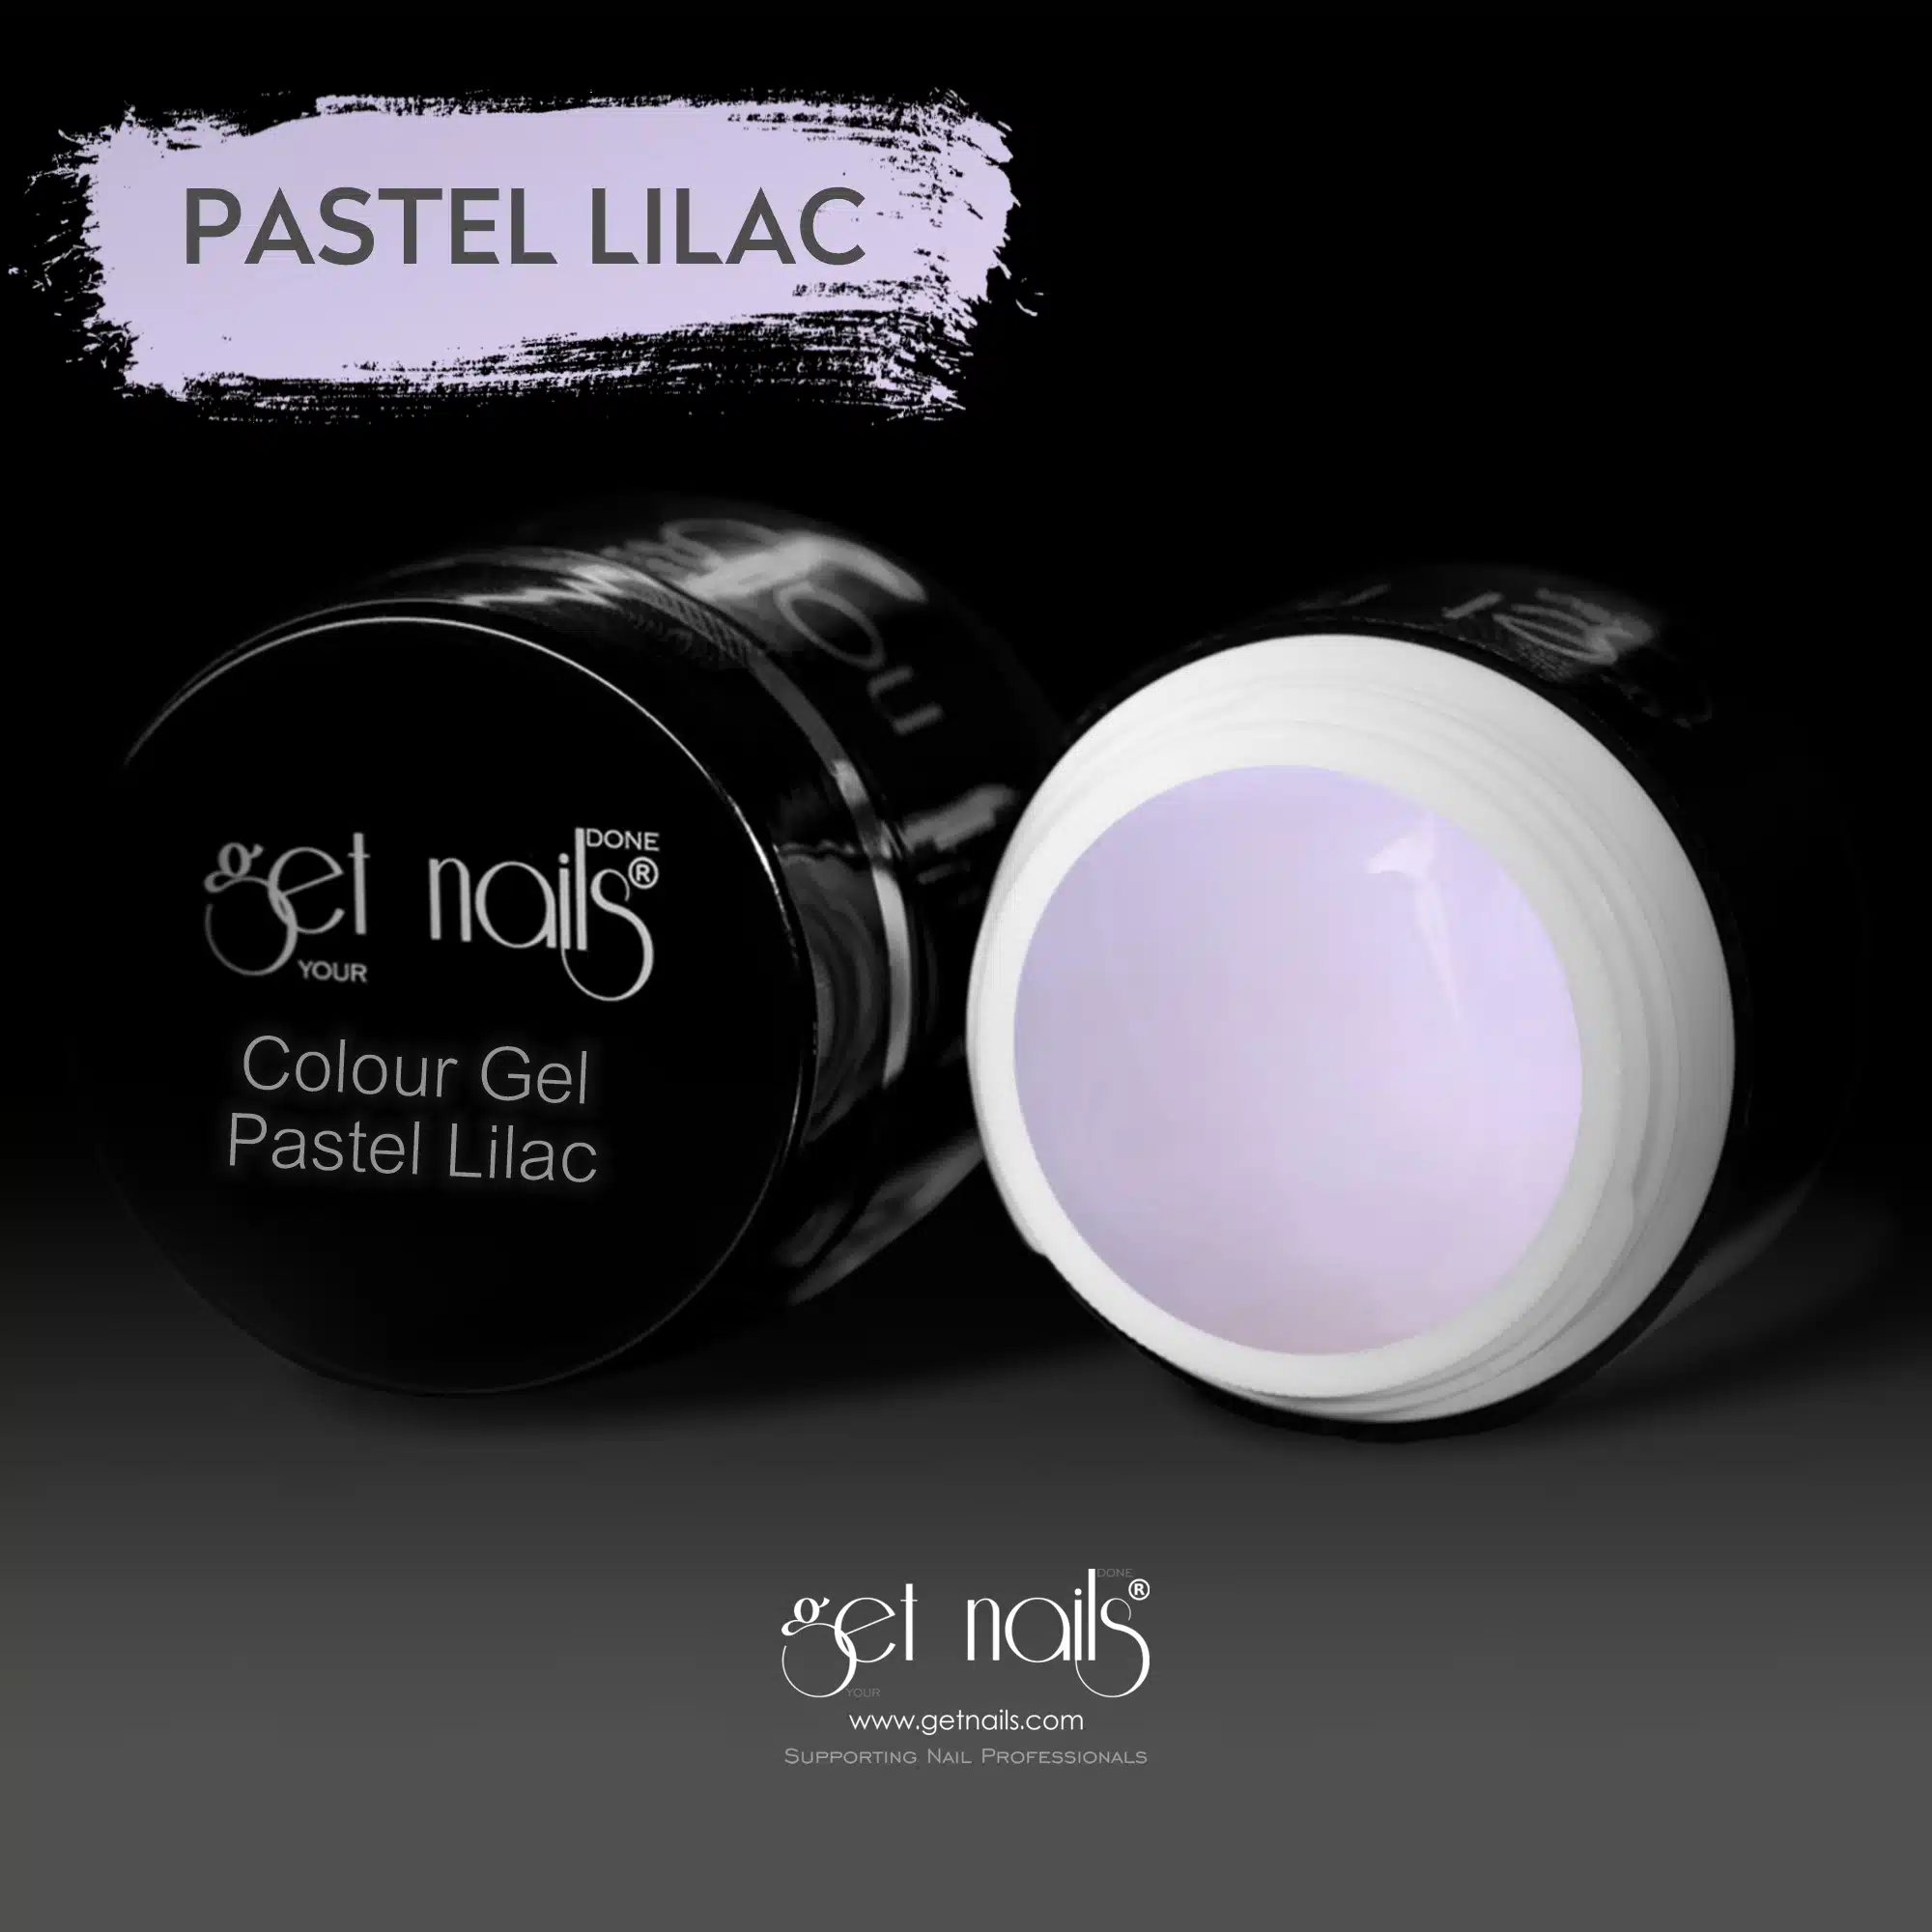 Get Nails Austria - Colour Gel Pastel Lilac 5g